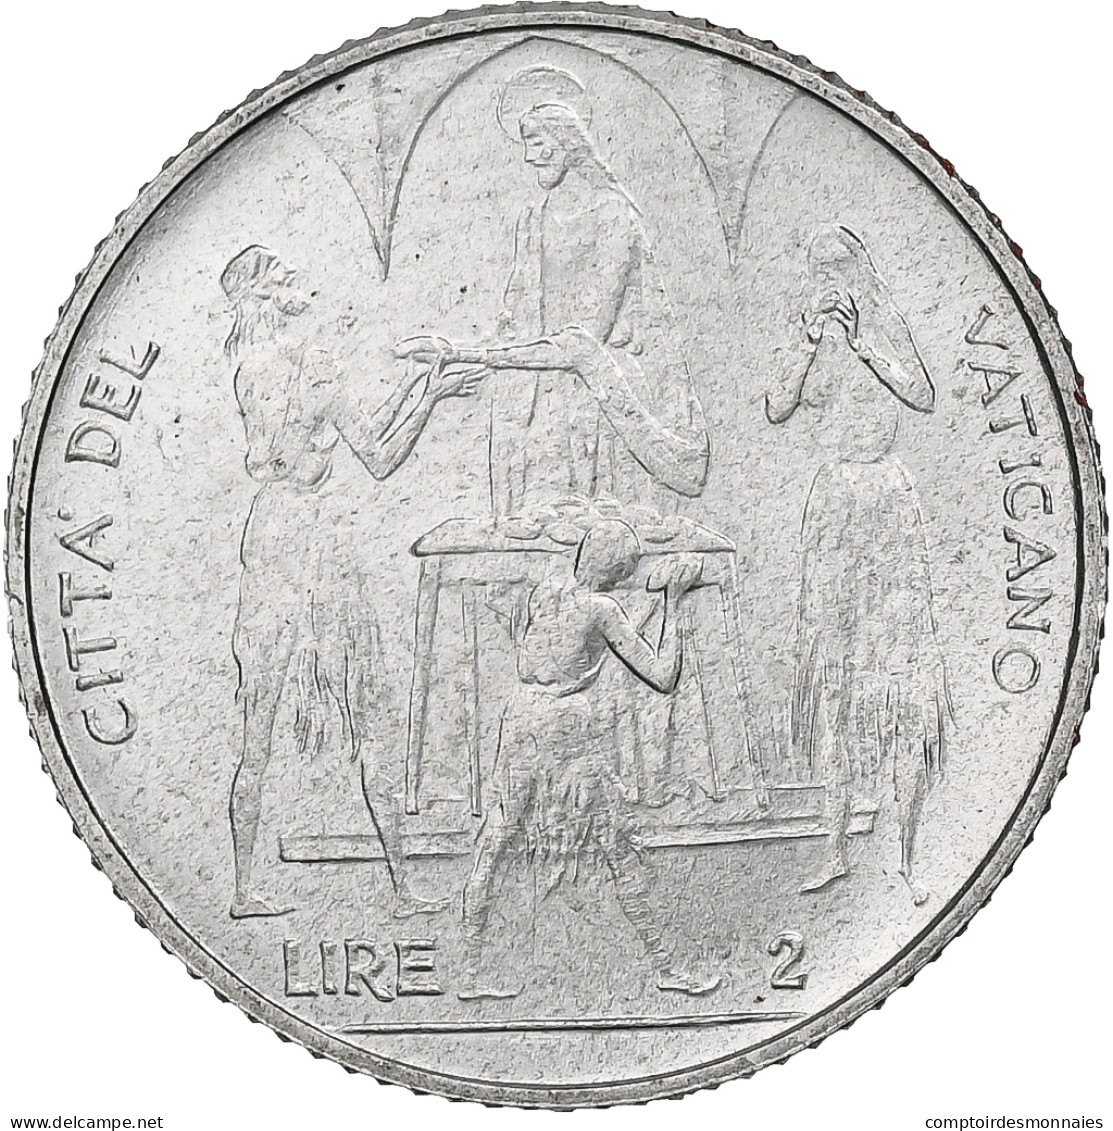 Vatican, Paul VI, 2 Lire, 1968 (Anno VI), Rome, Aluminium, SPL+, KM:101 - Vatican